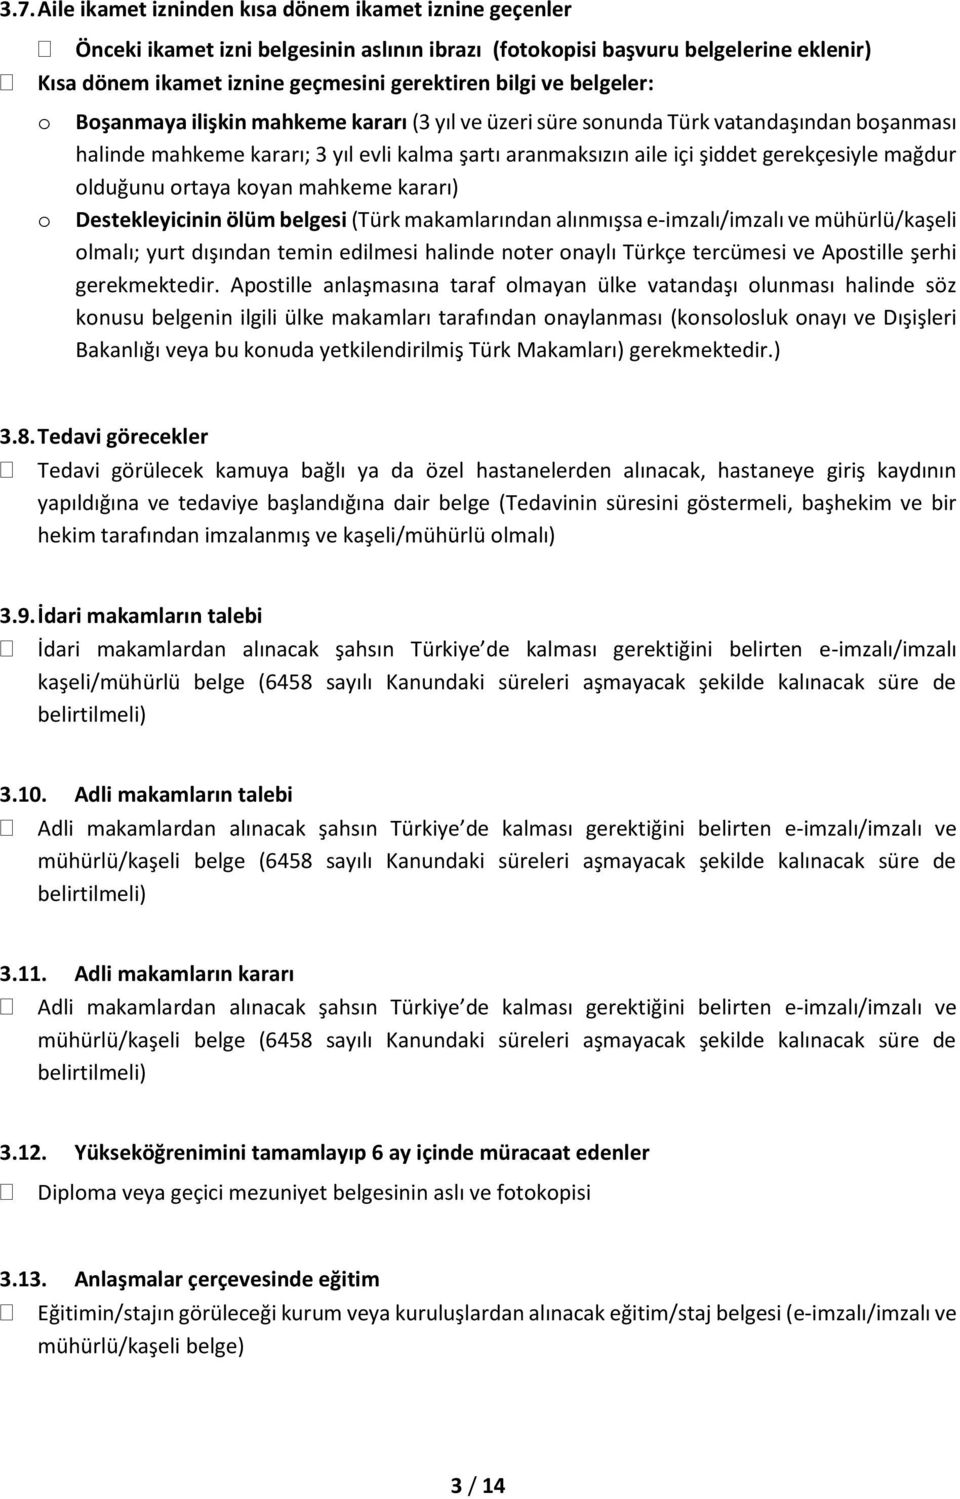 mağdur olduğunu ortaya koyan mahkeme kararı) Destekleyicinin ölüm belgesi (Türk makamlarından alınmışsa e-imzalı/imzalı ve mühürlü/kaşeli olmalı; yurt dışından temin edilmesi halinde noter onaylı